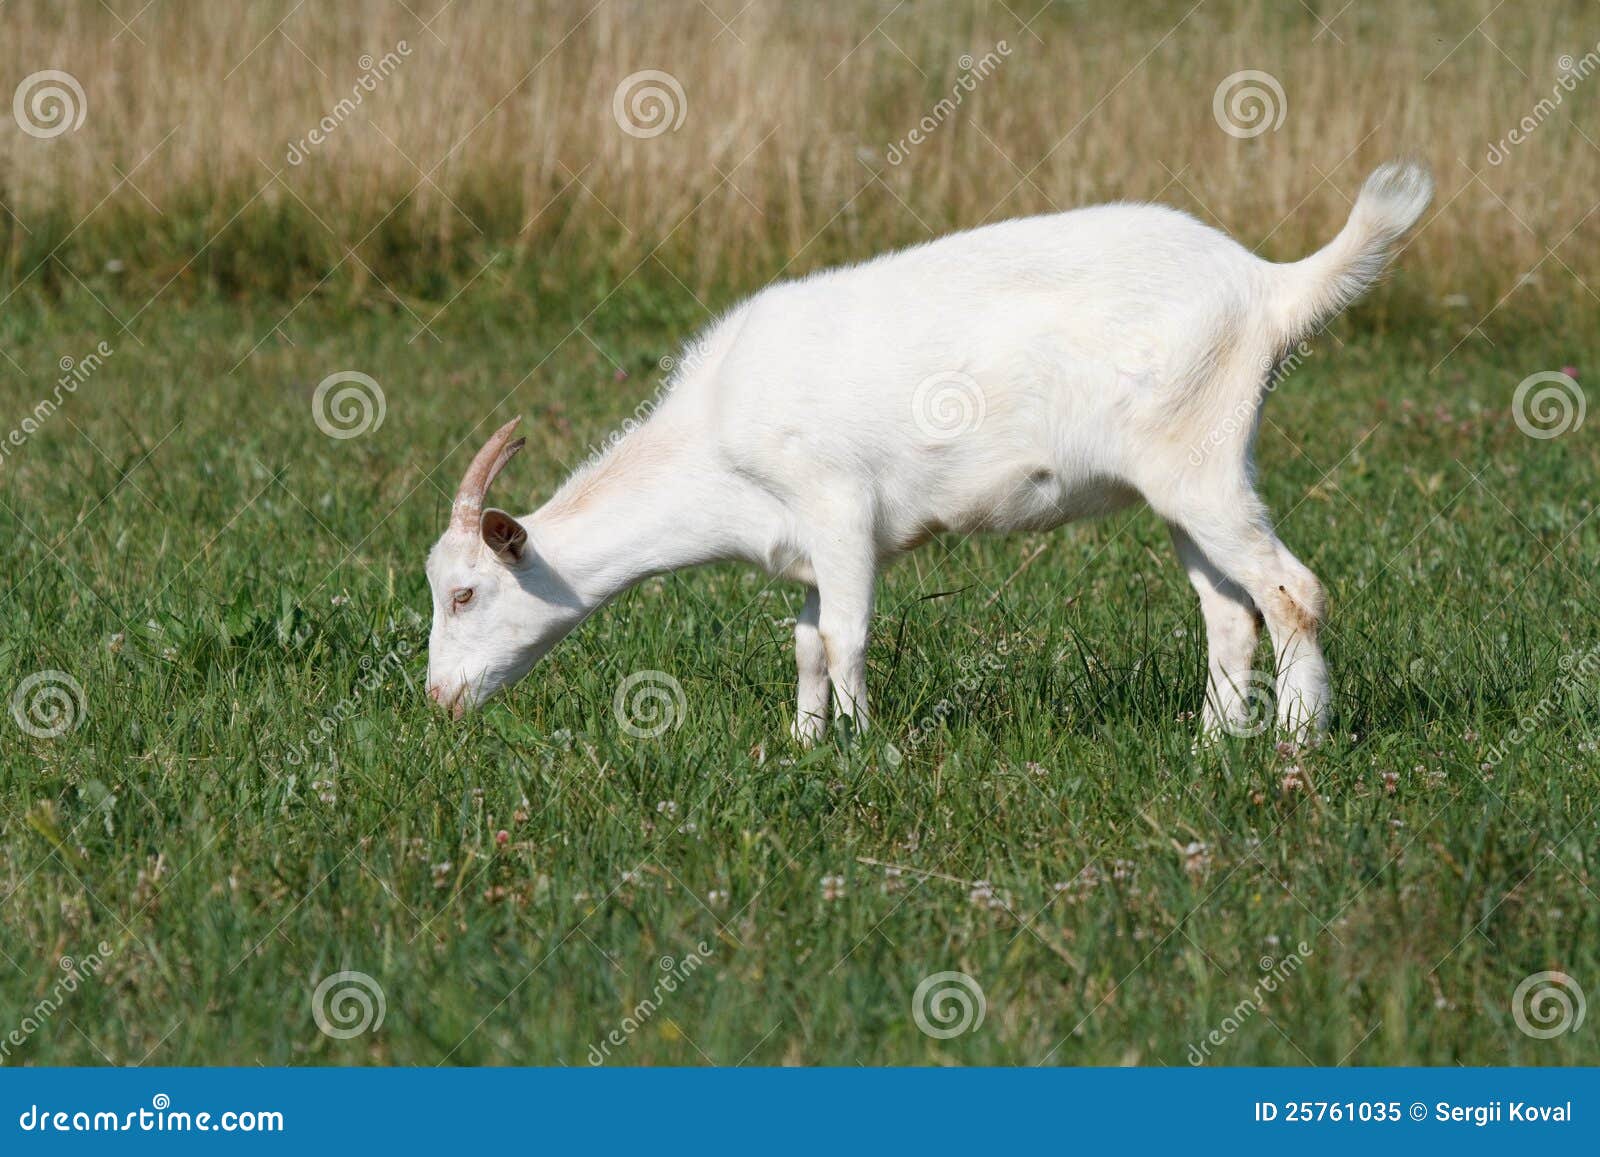 a goat grazing